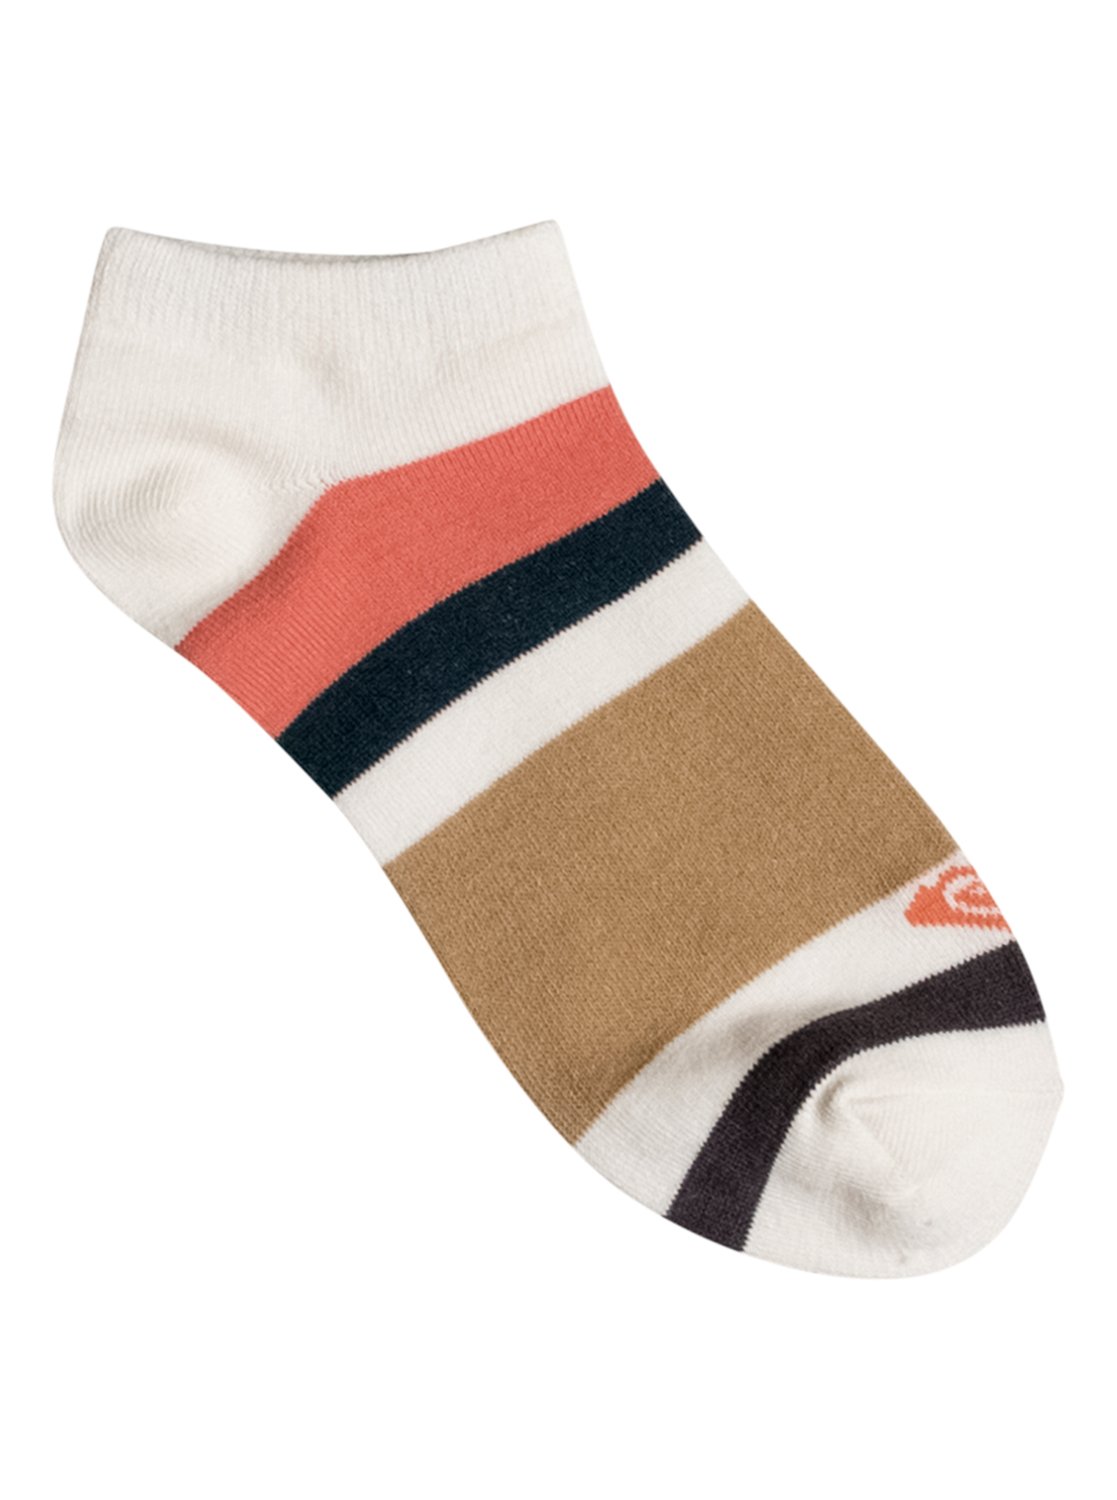 ROXY Ankle Socks ERJAA03343 | Roxy